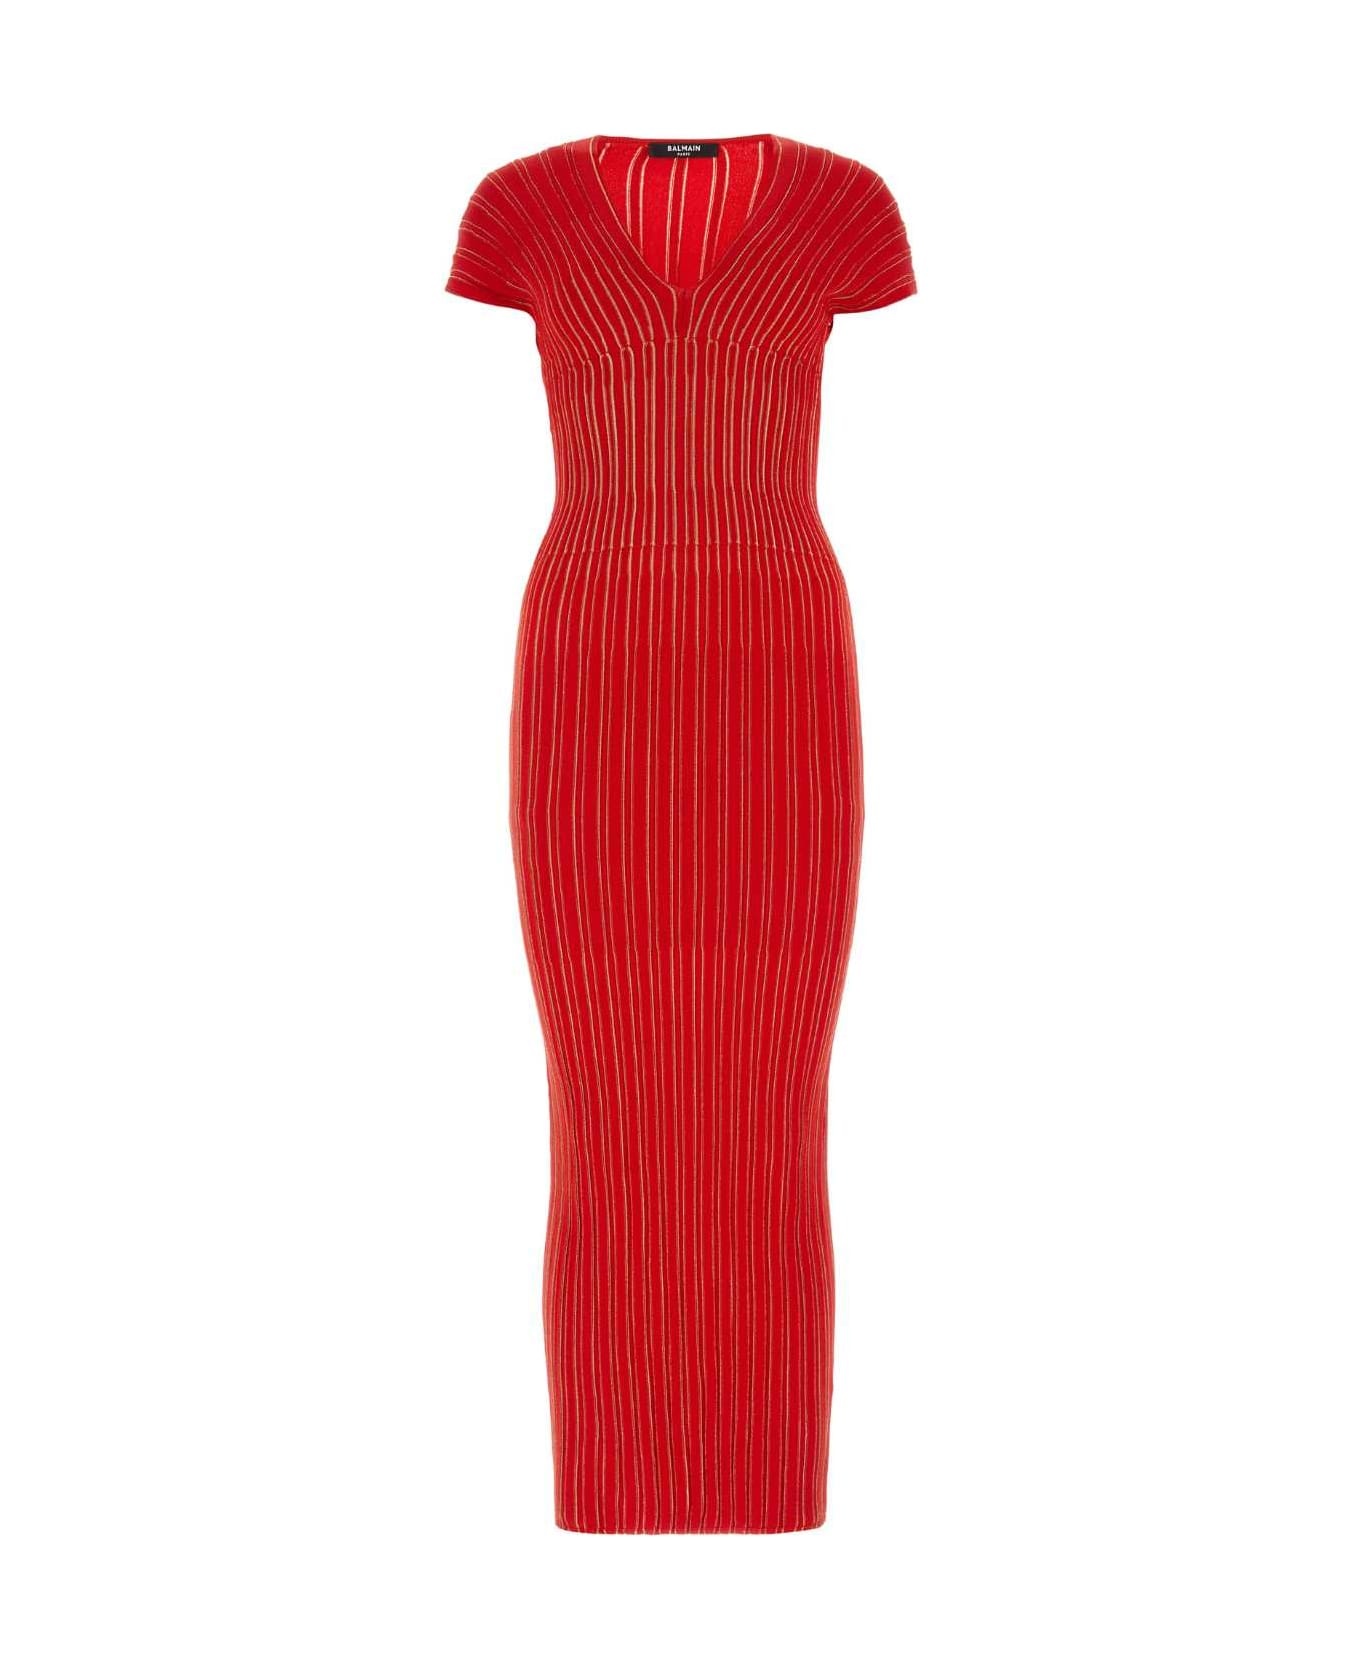 Red Stretch Viscose Blend Dress - 1